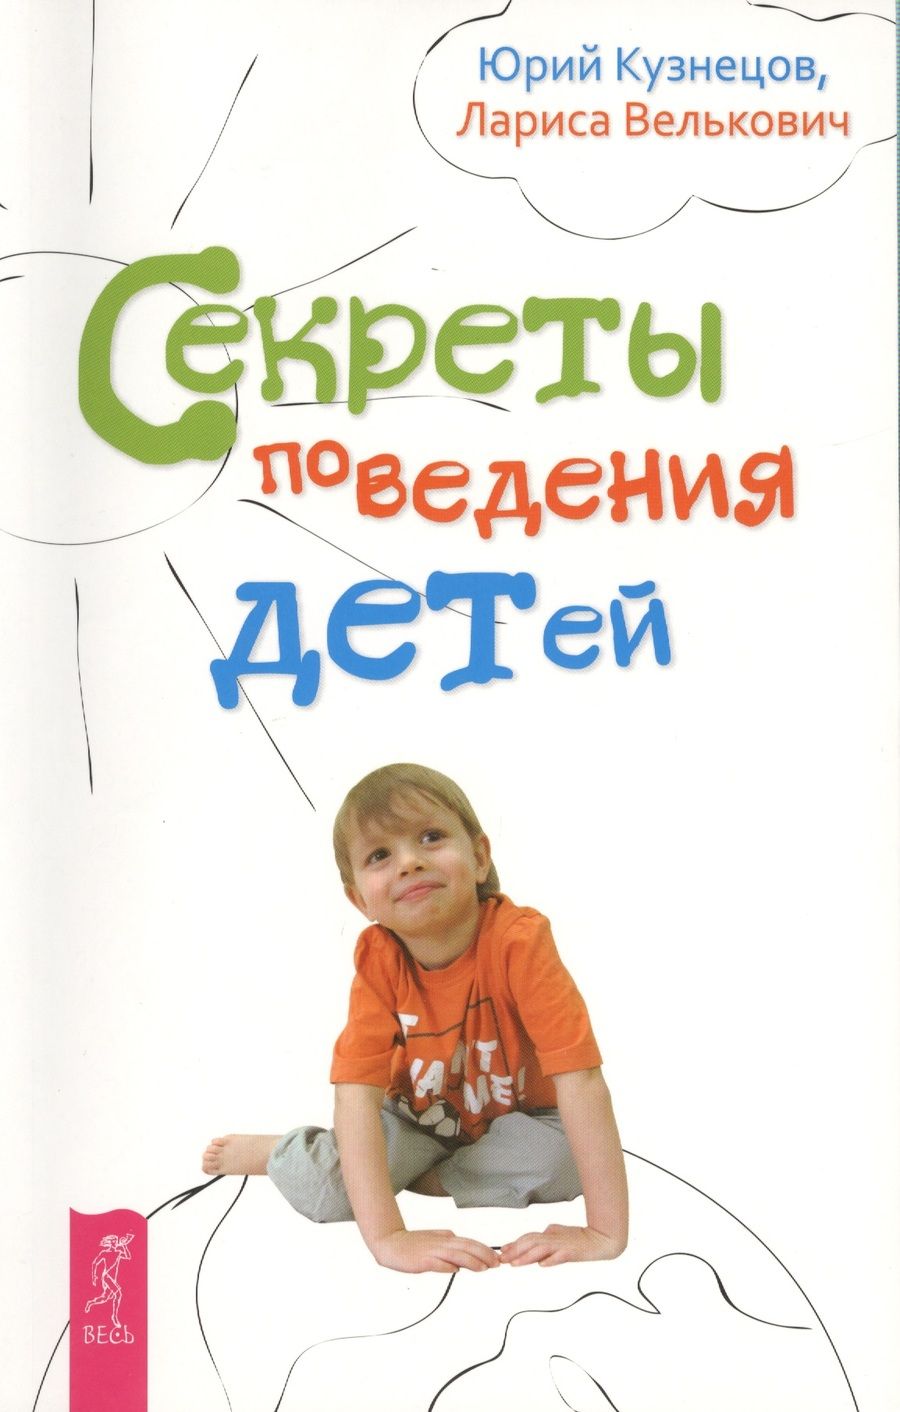 Обложка книги "Кузнецов, Велькович: Секреты поведения детей"